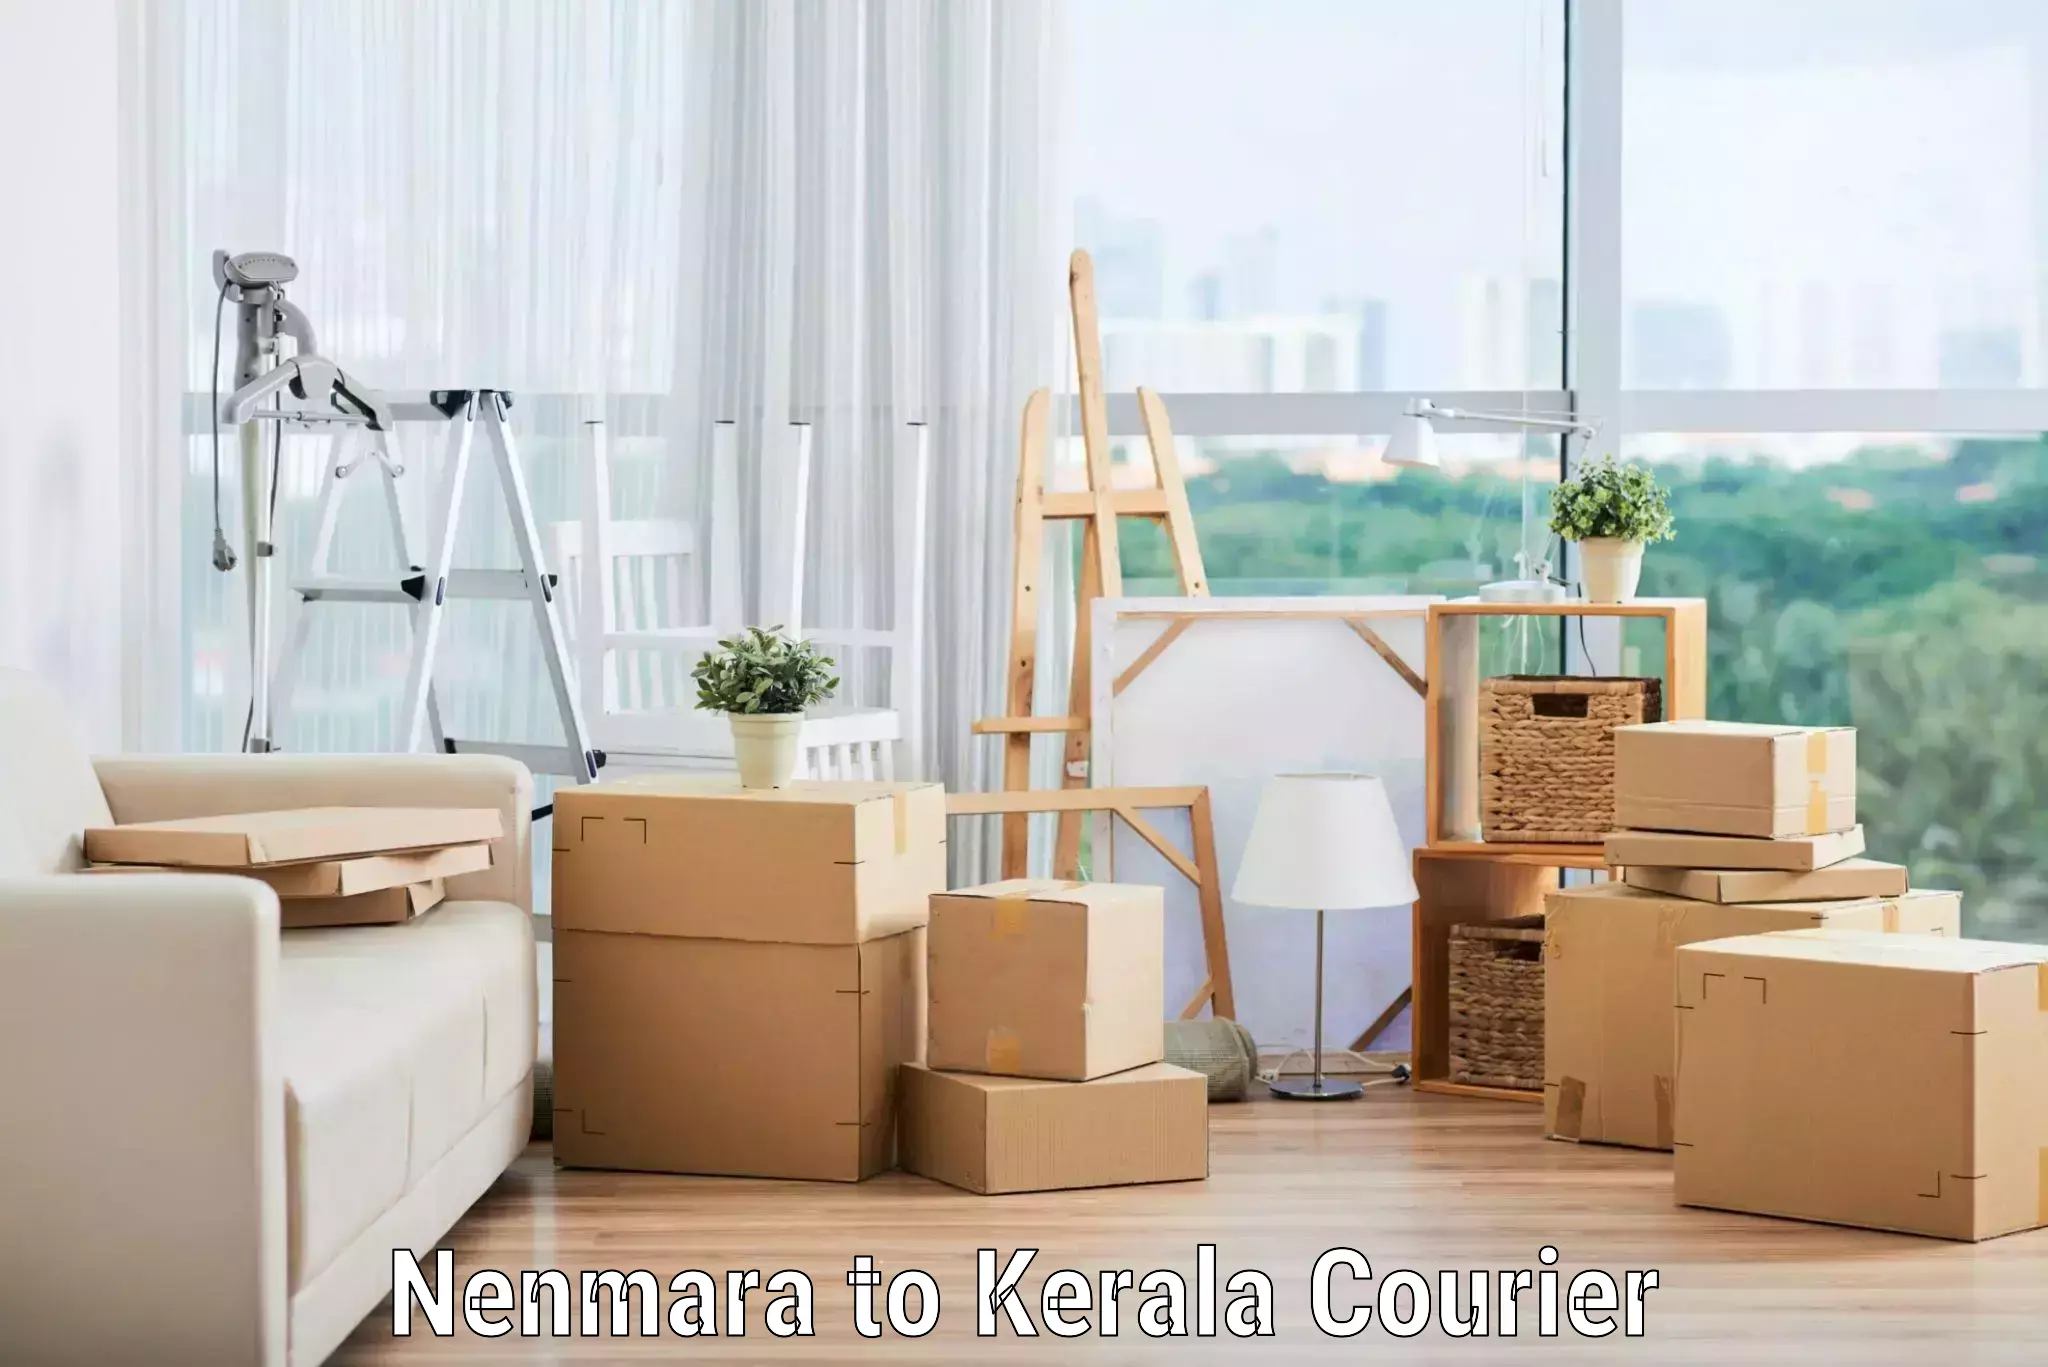 Expert furniture movers Nenmara to Kerala